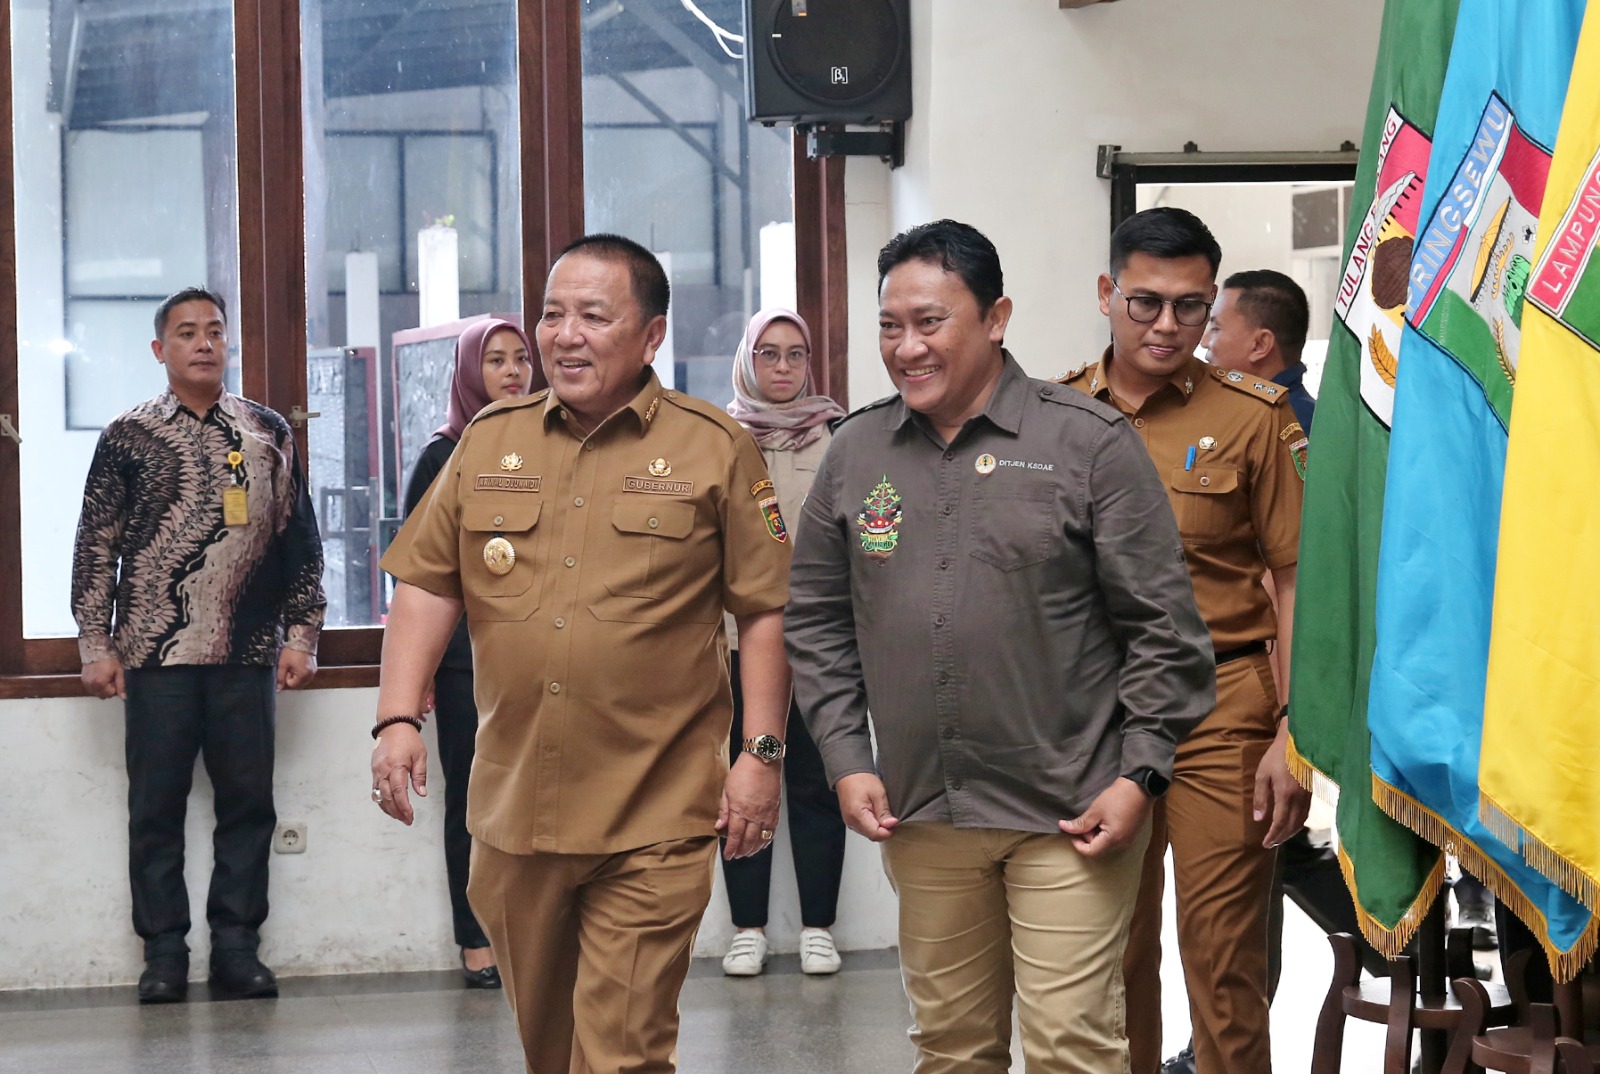 Wagub Kalimantan Tengah Kunjungi Gubernur Lampung Pelajari Kesuksesan Pertanian di Lampung 